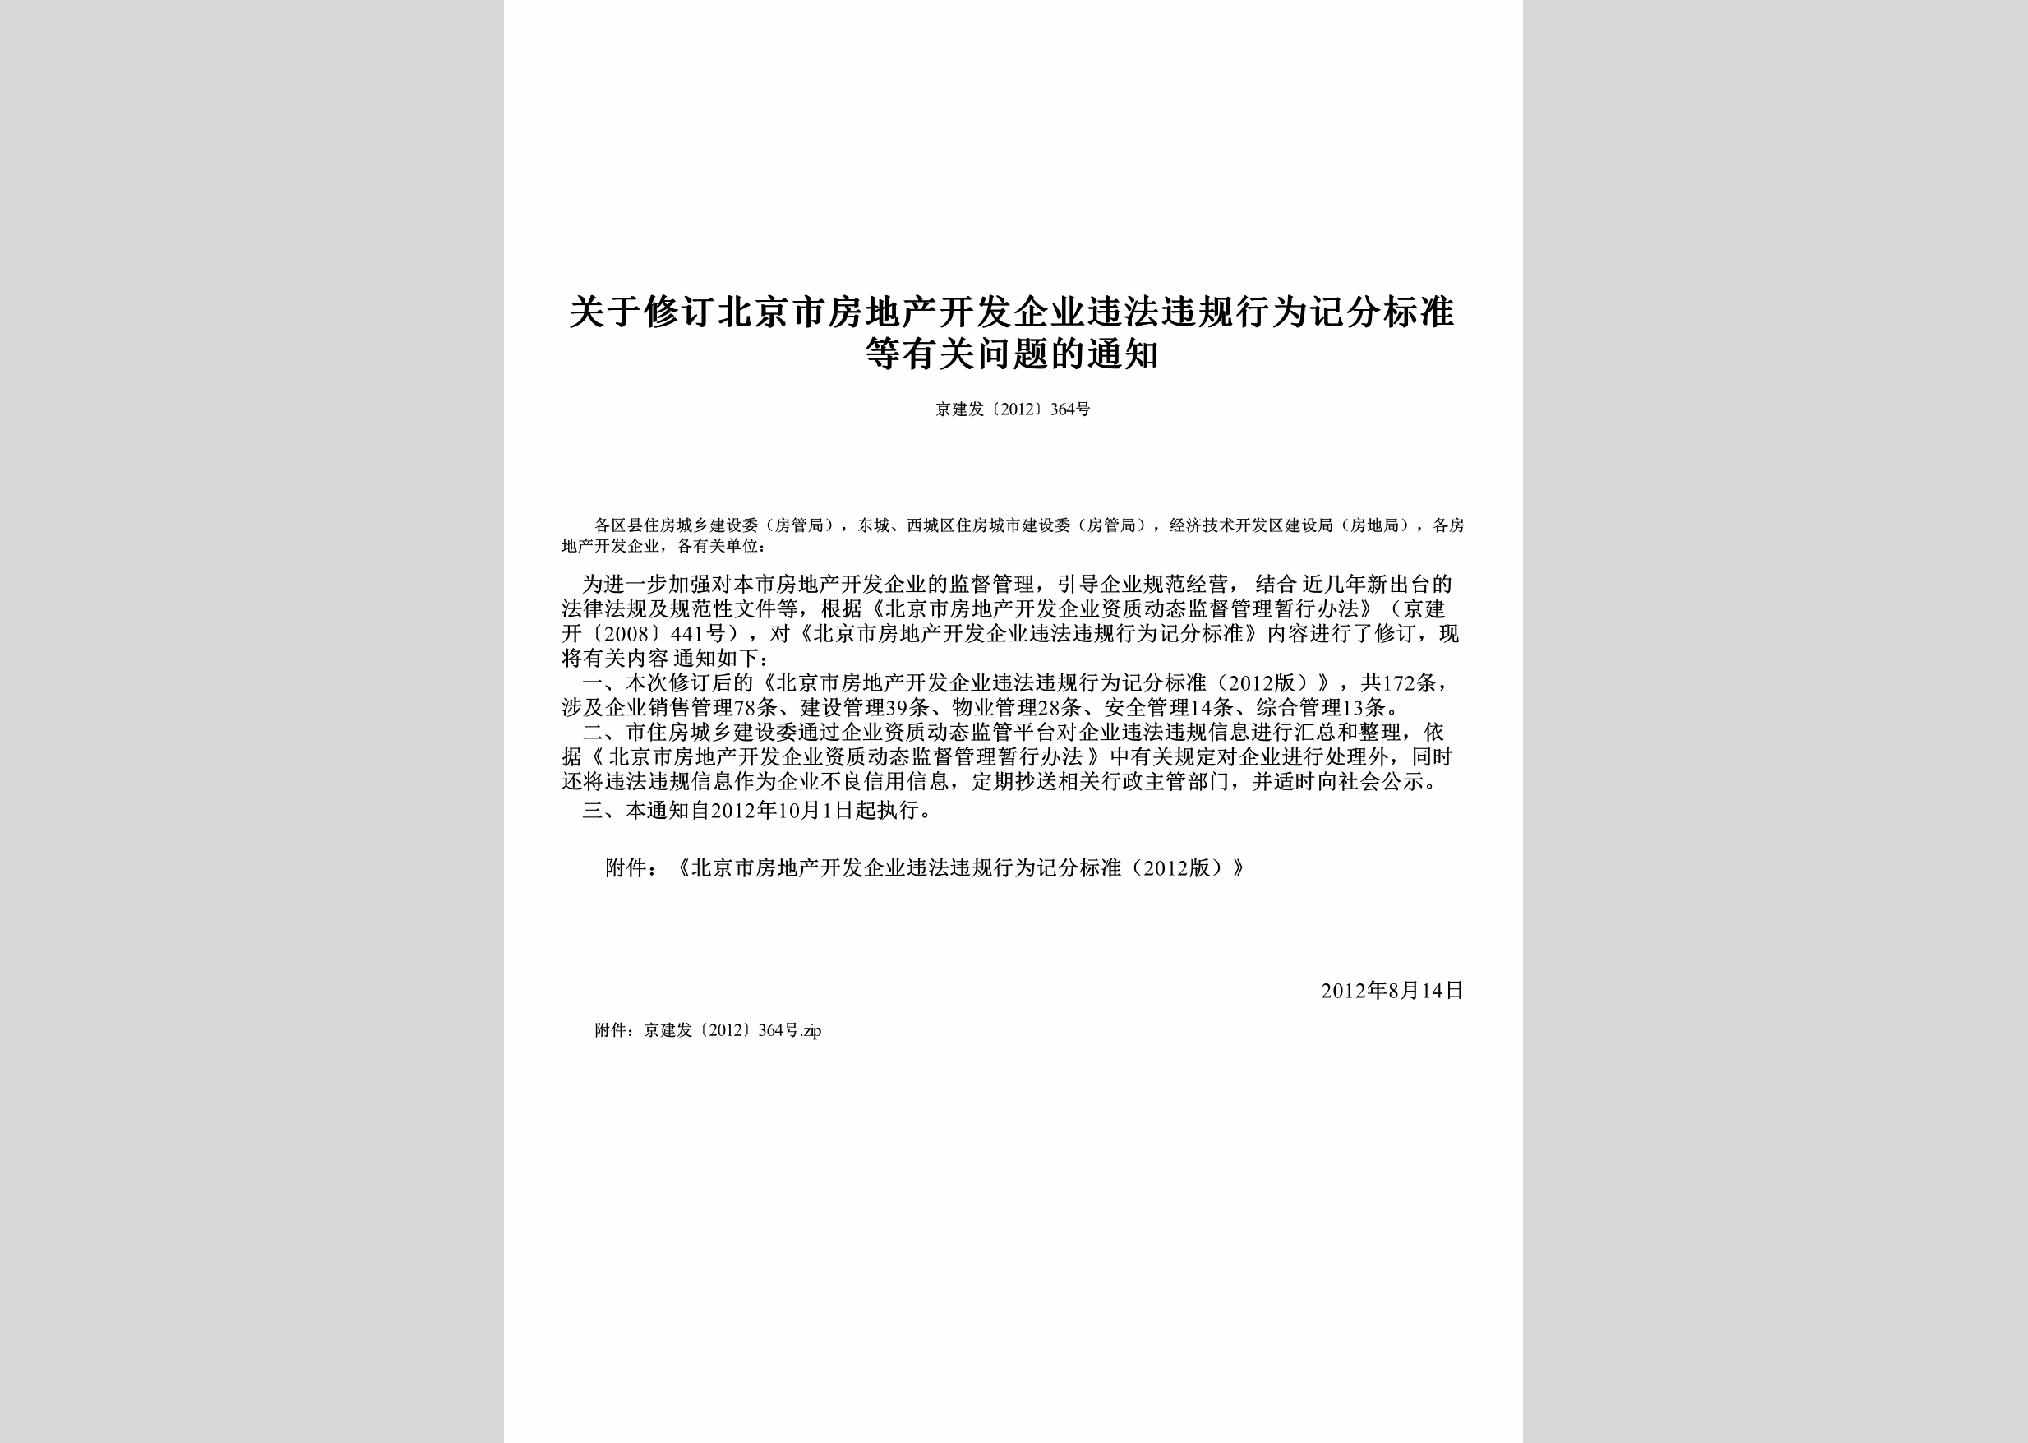 京建发[2012]364号：关于修订北京市房地产开发企业违法违规行为记分标准等有关问题的通知